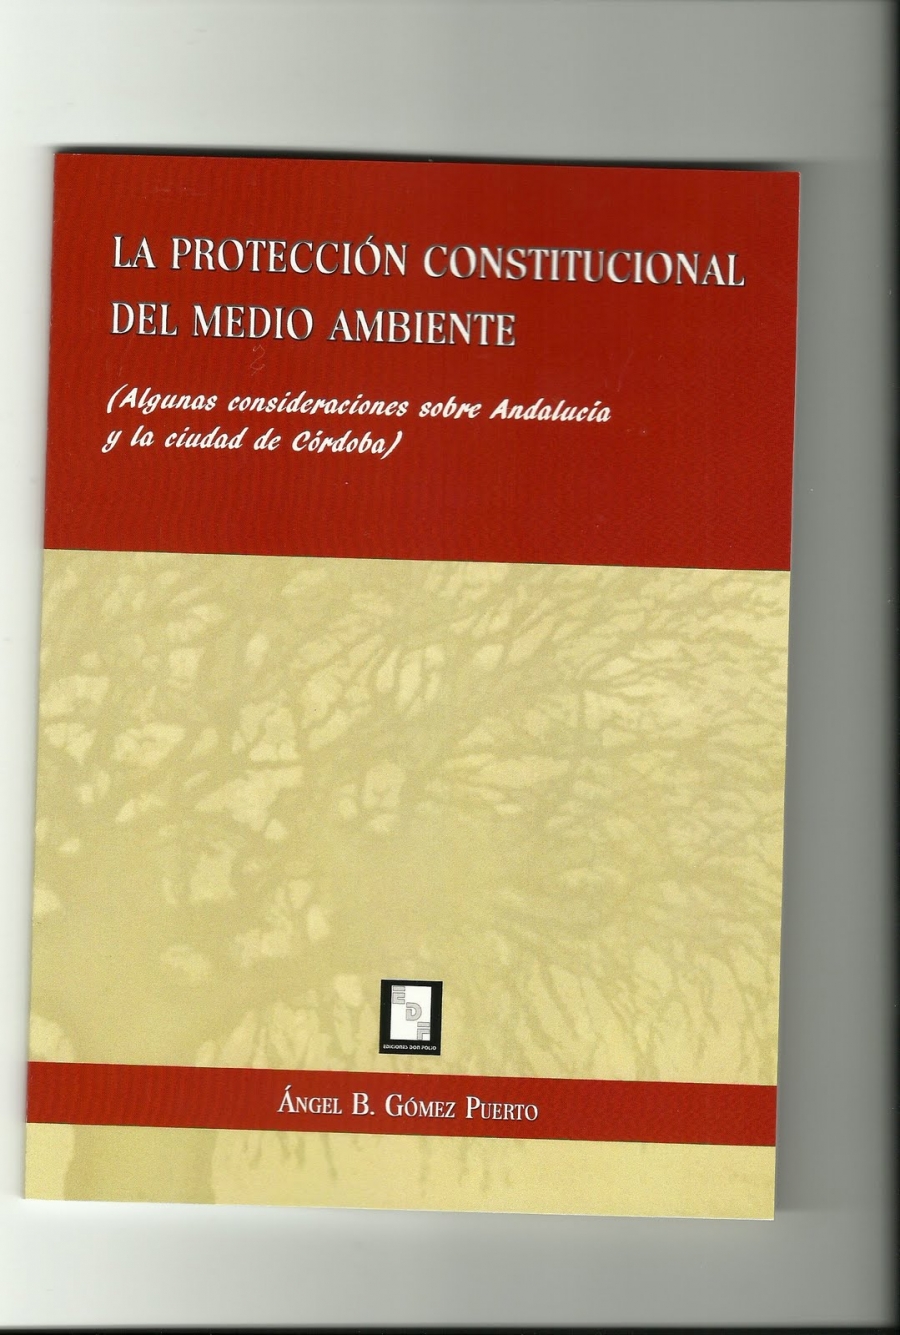 Imagen de portada del libro La protección constitucional del medio ambiente